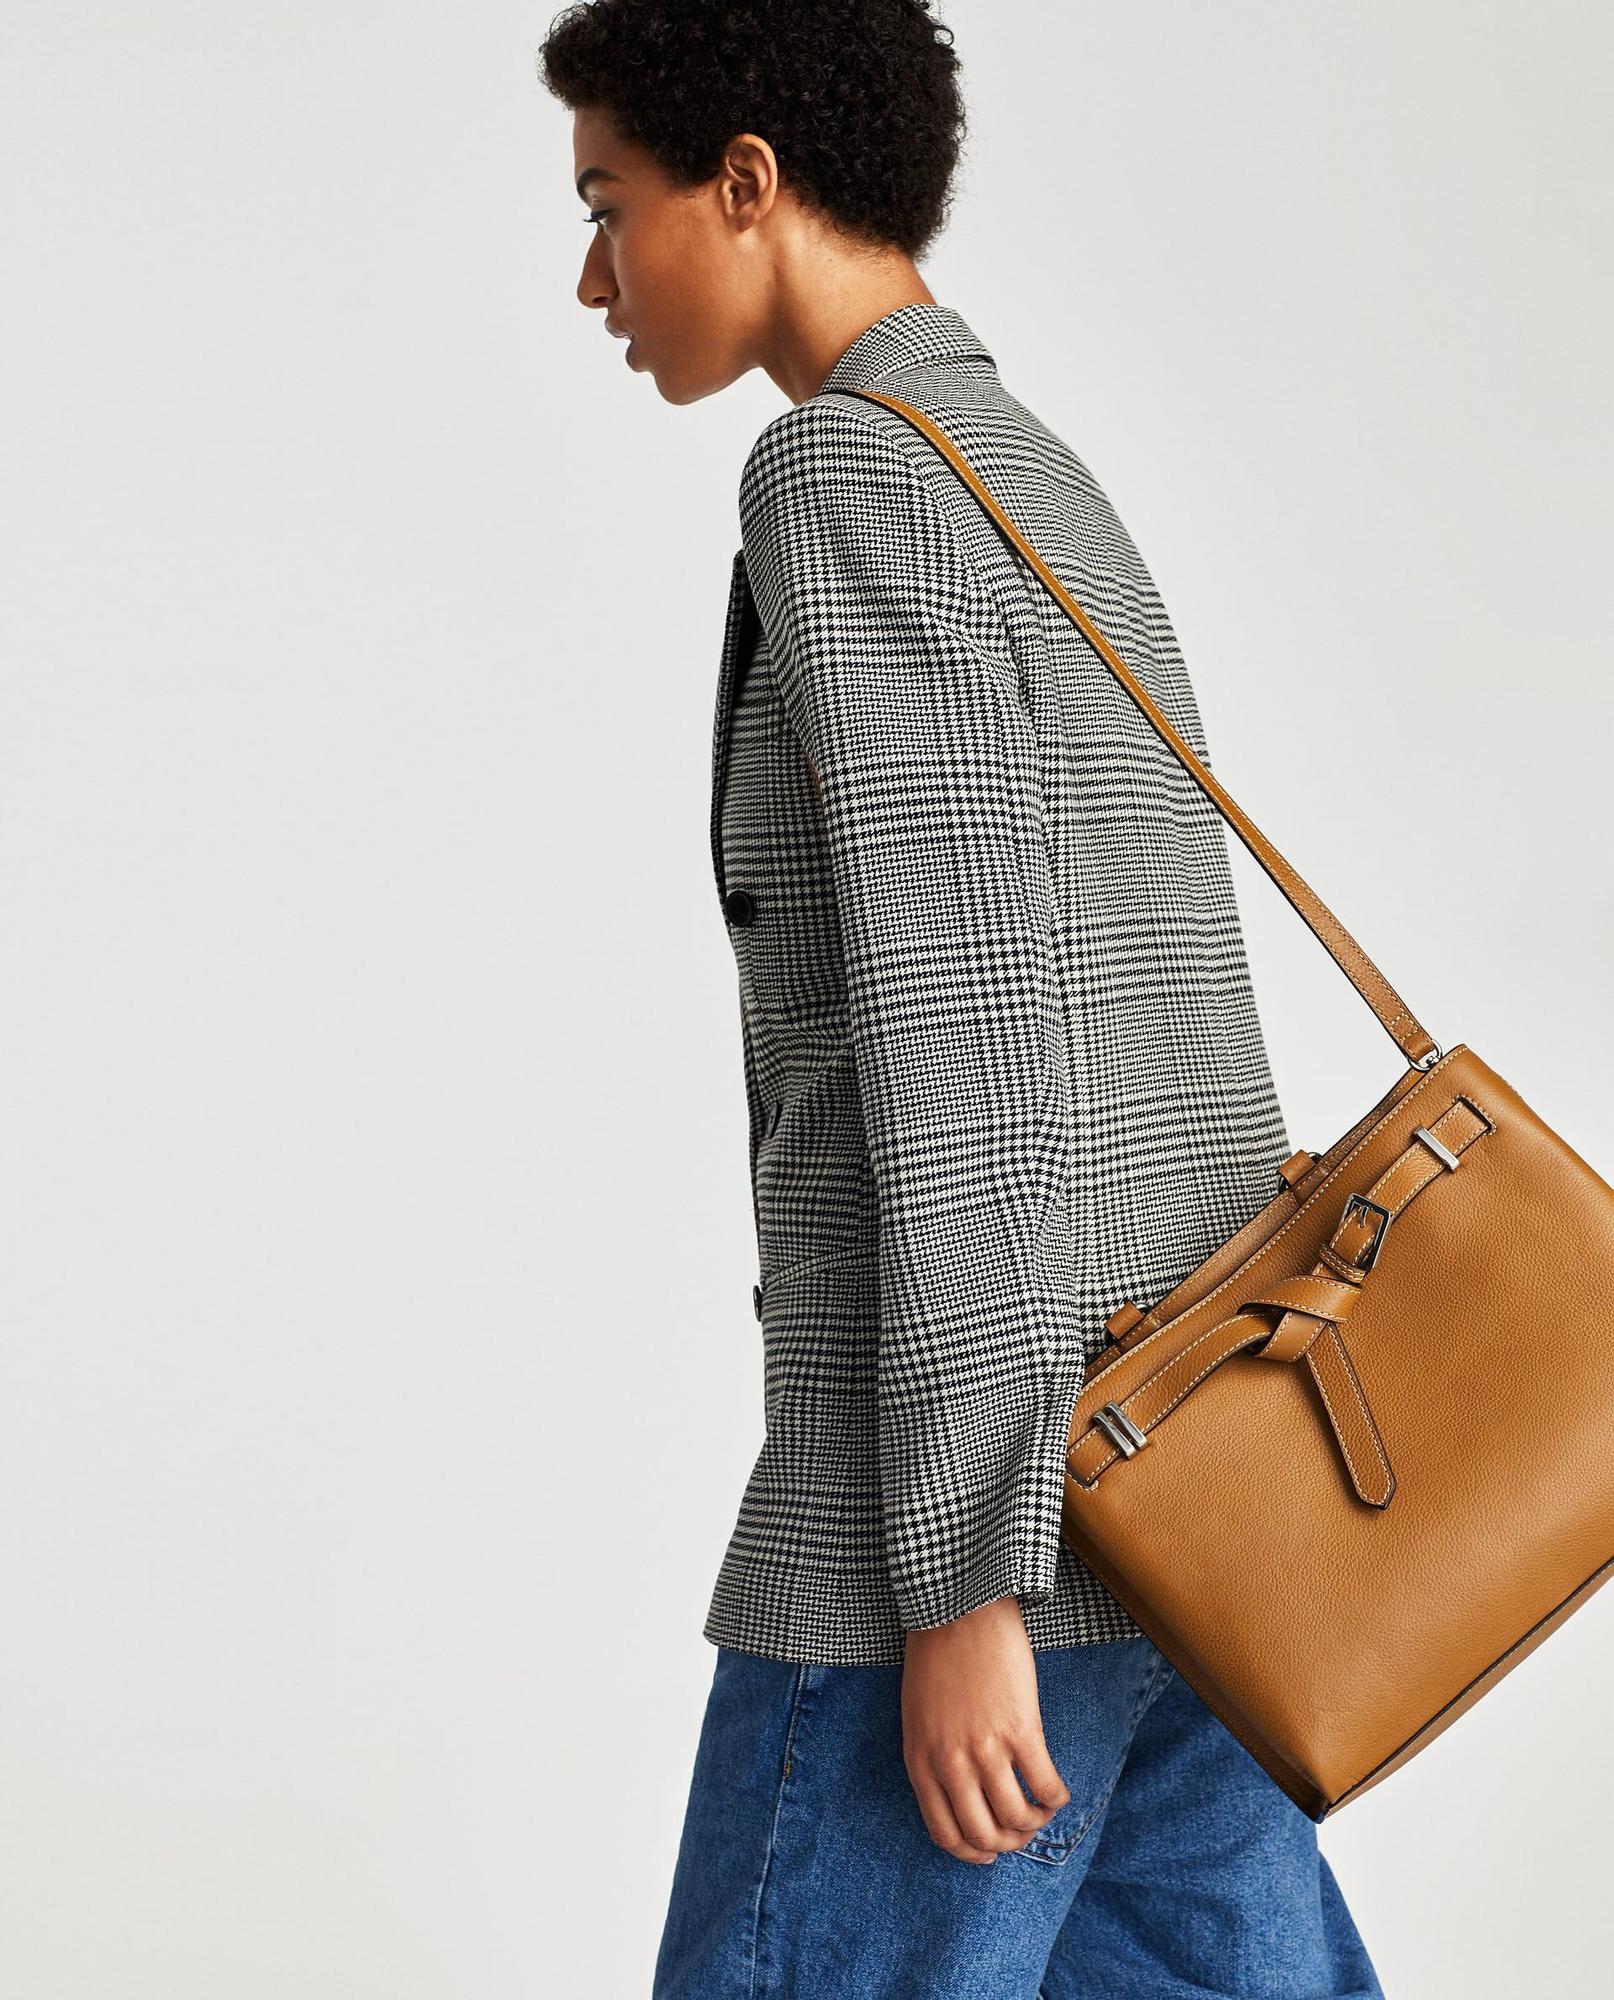 Los bolsos de Zara que querrás en sus rebajas de enero de 2018 - Woman